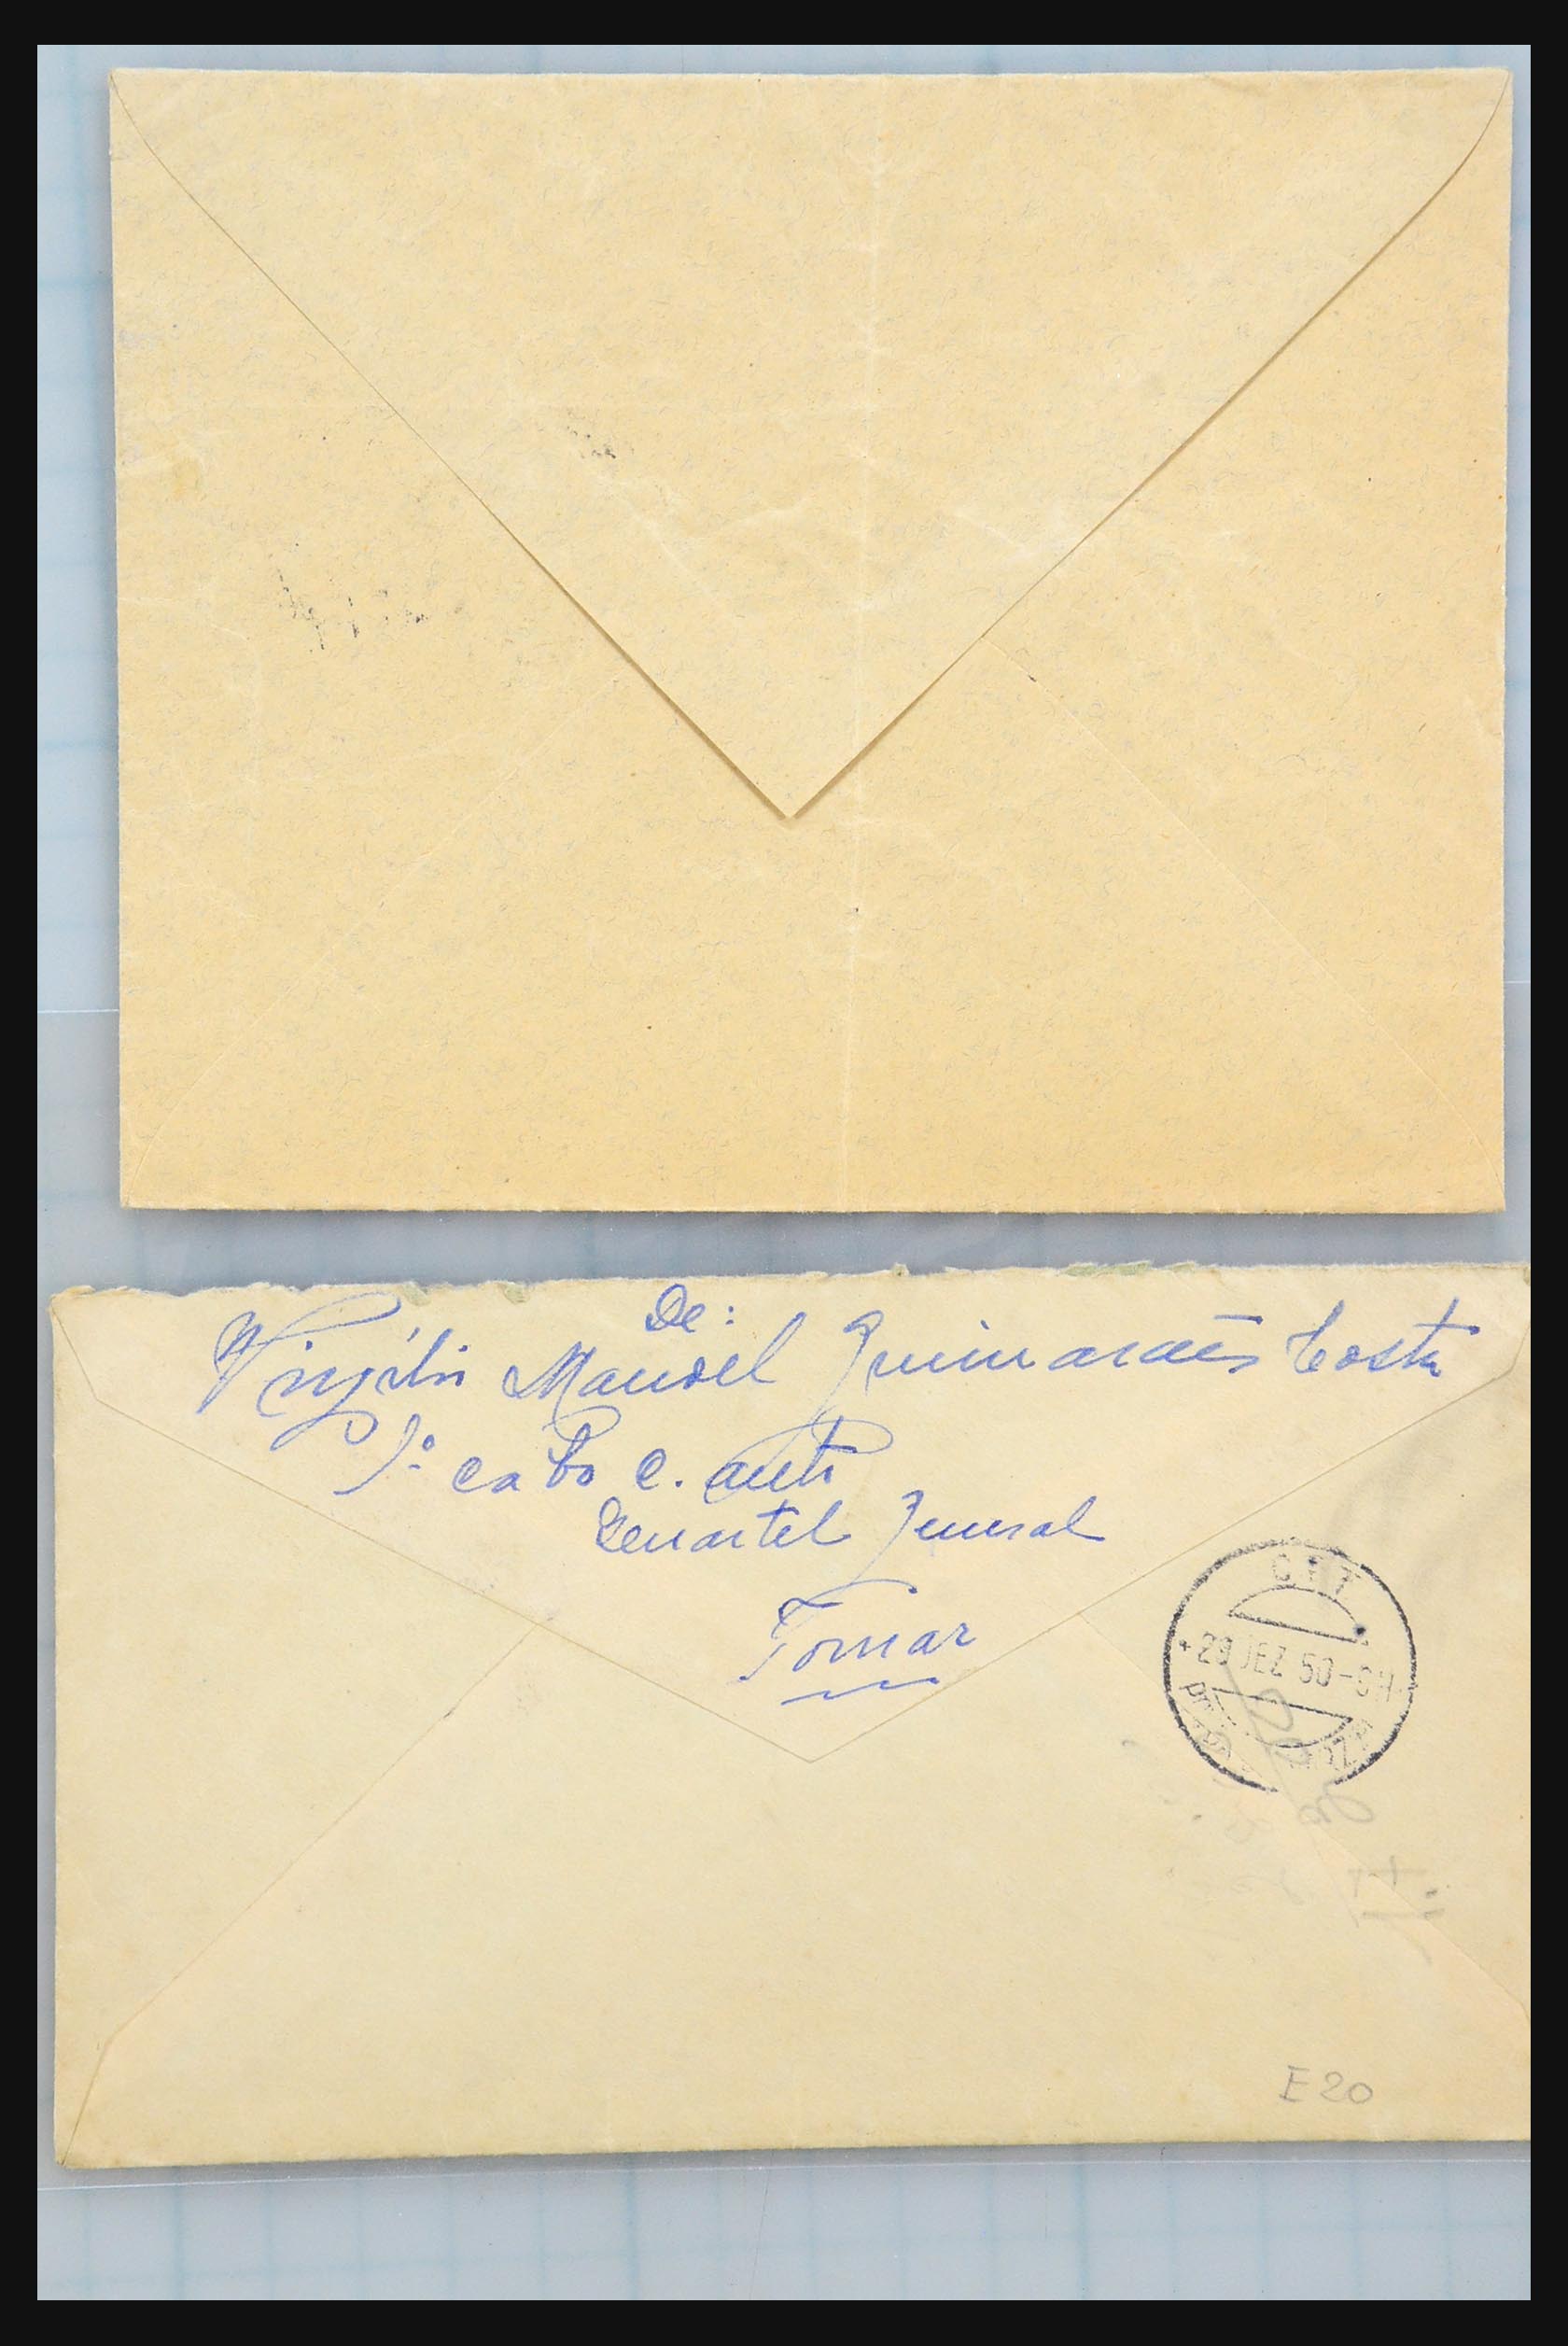 31358 195 - 31358 Portugal/Luxemburg/Griekenland brieven 1880-1960.